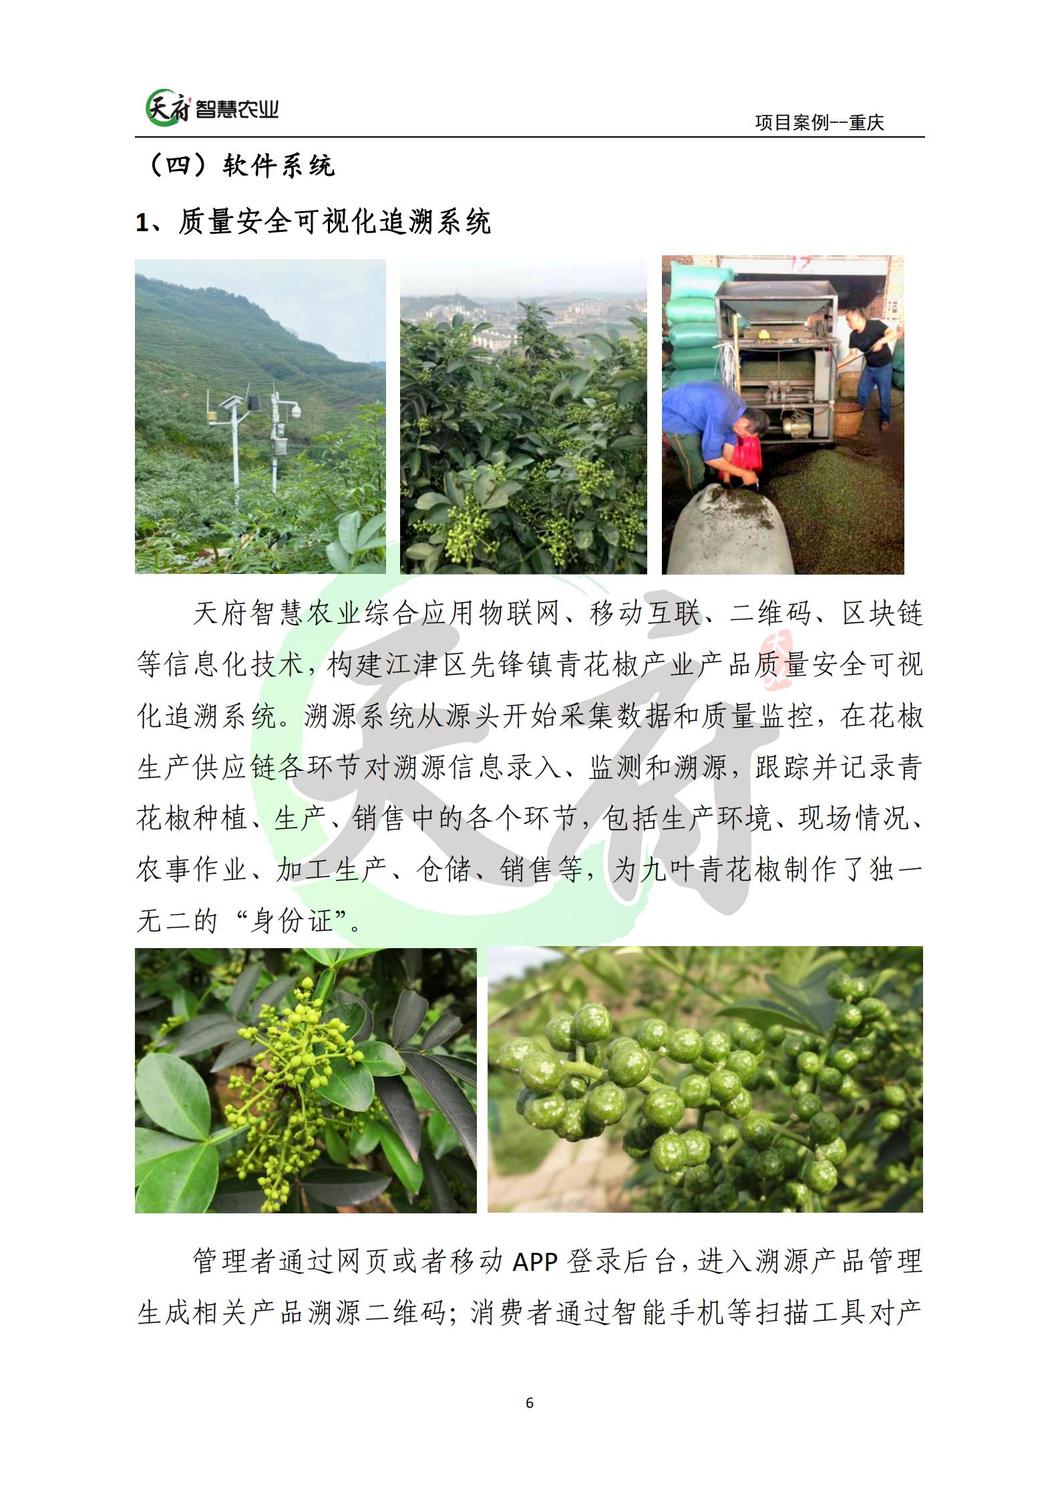 案例7：重庆数字农业花椒示范基地_06.jpg